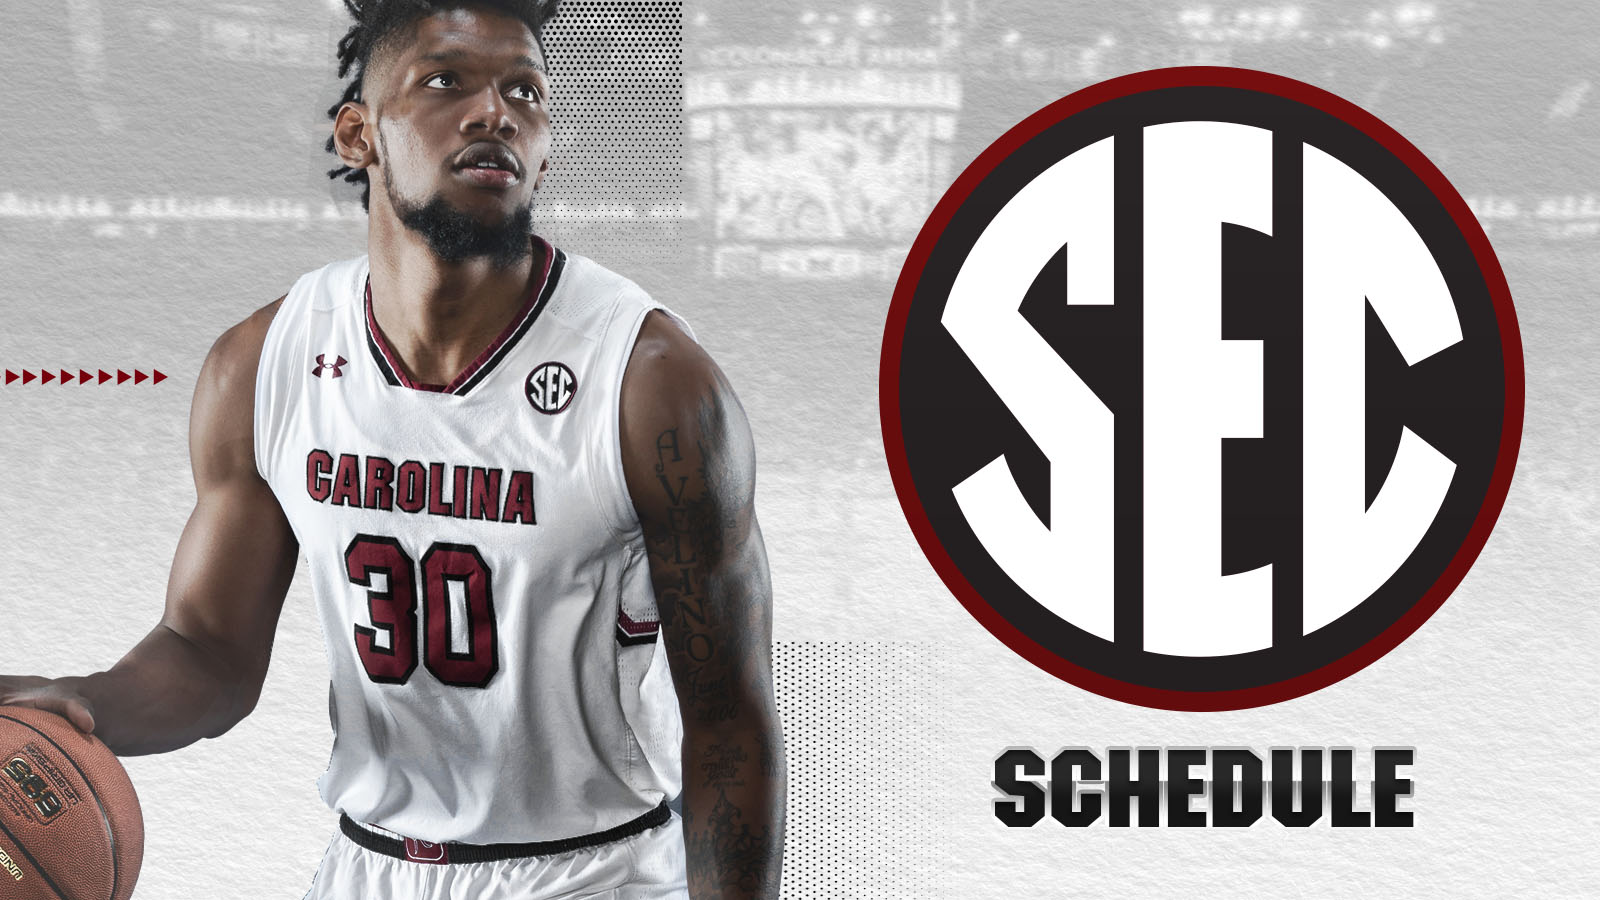 SEC Releases 2019 Men’s Basketball Schedule